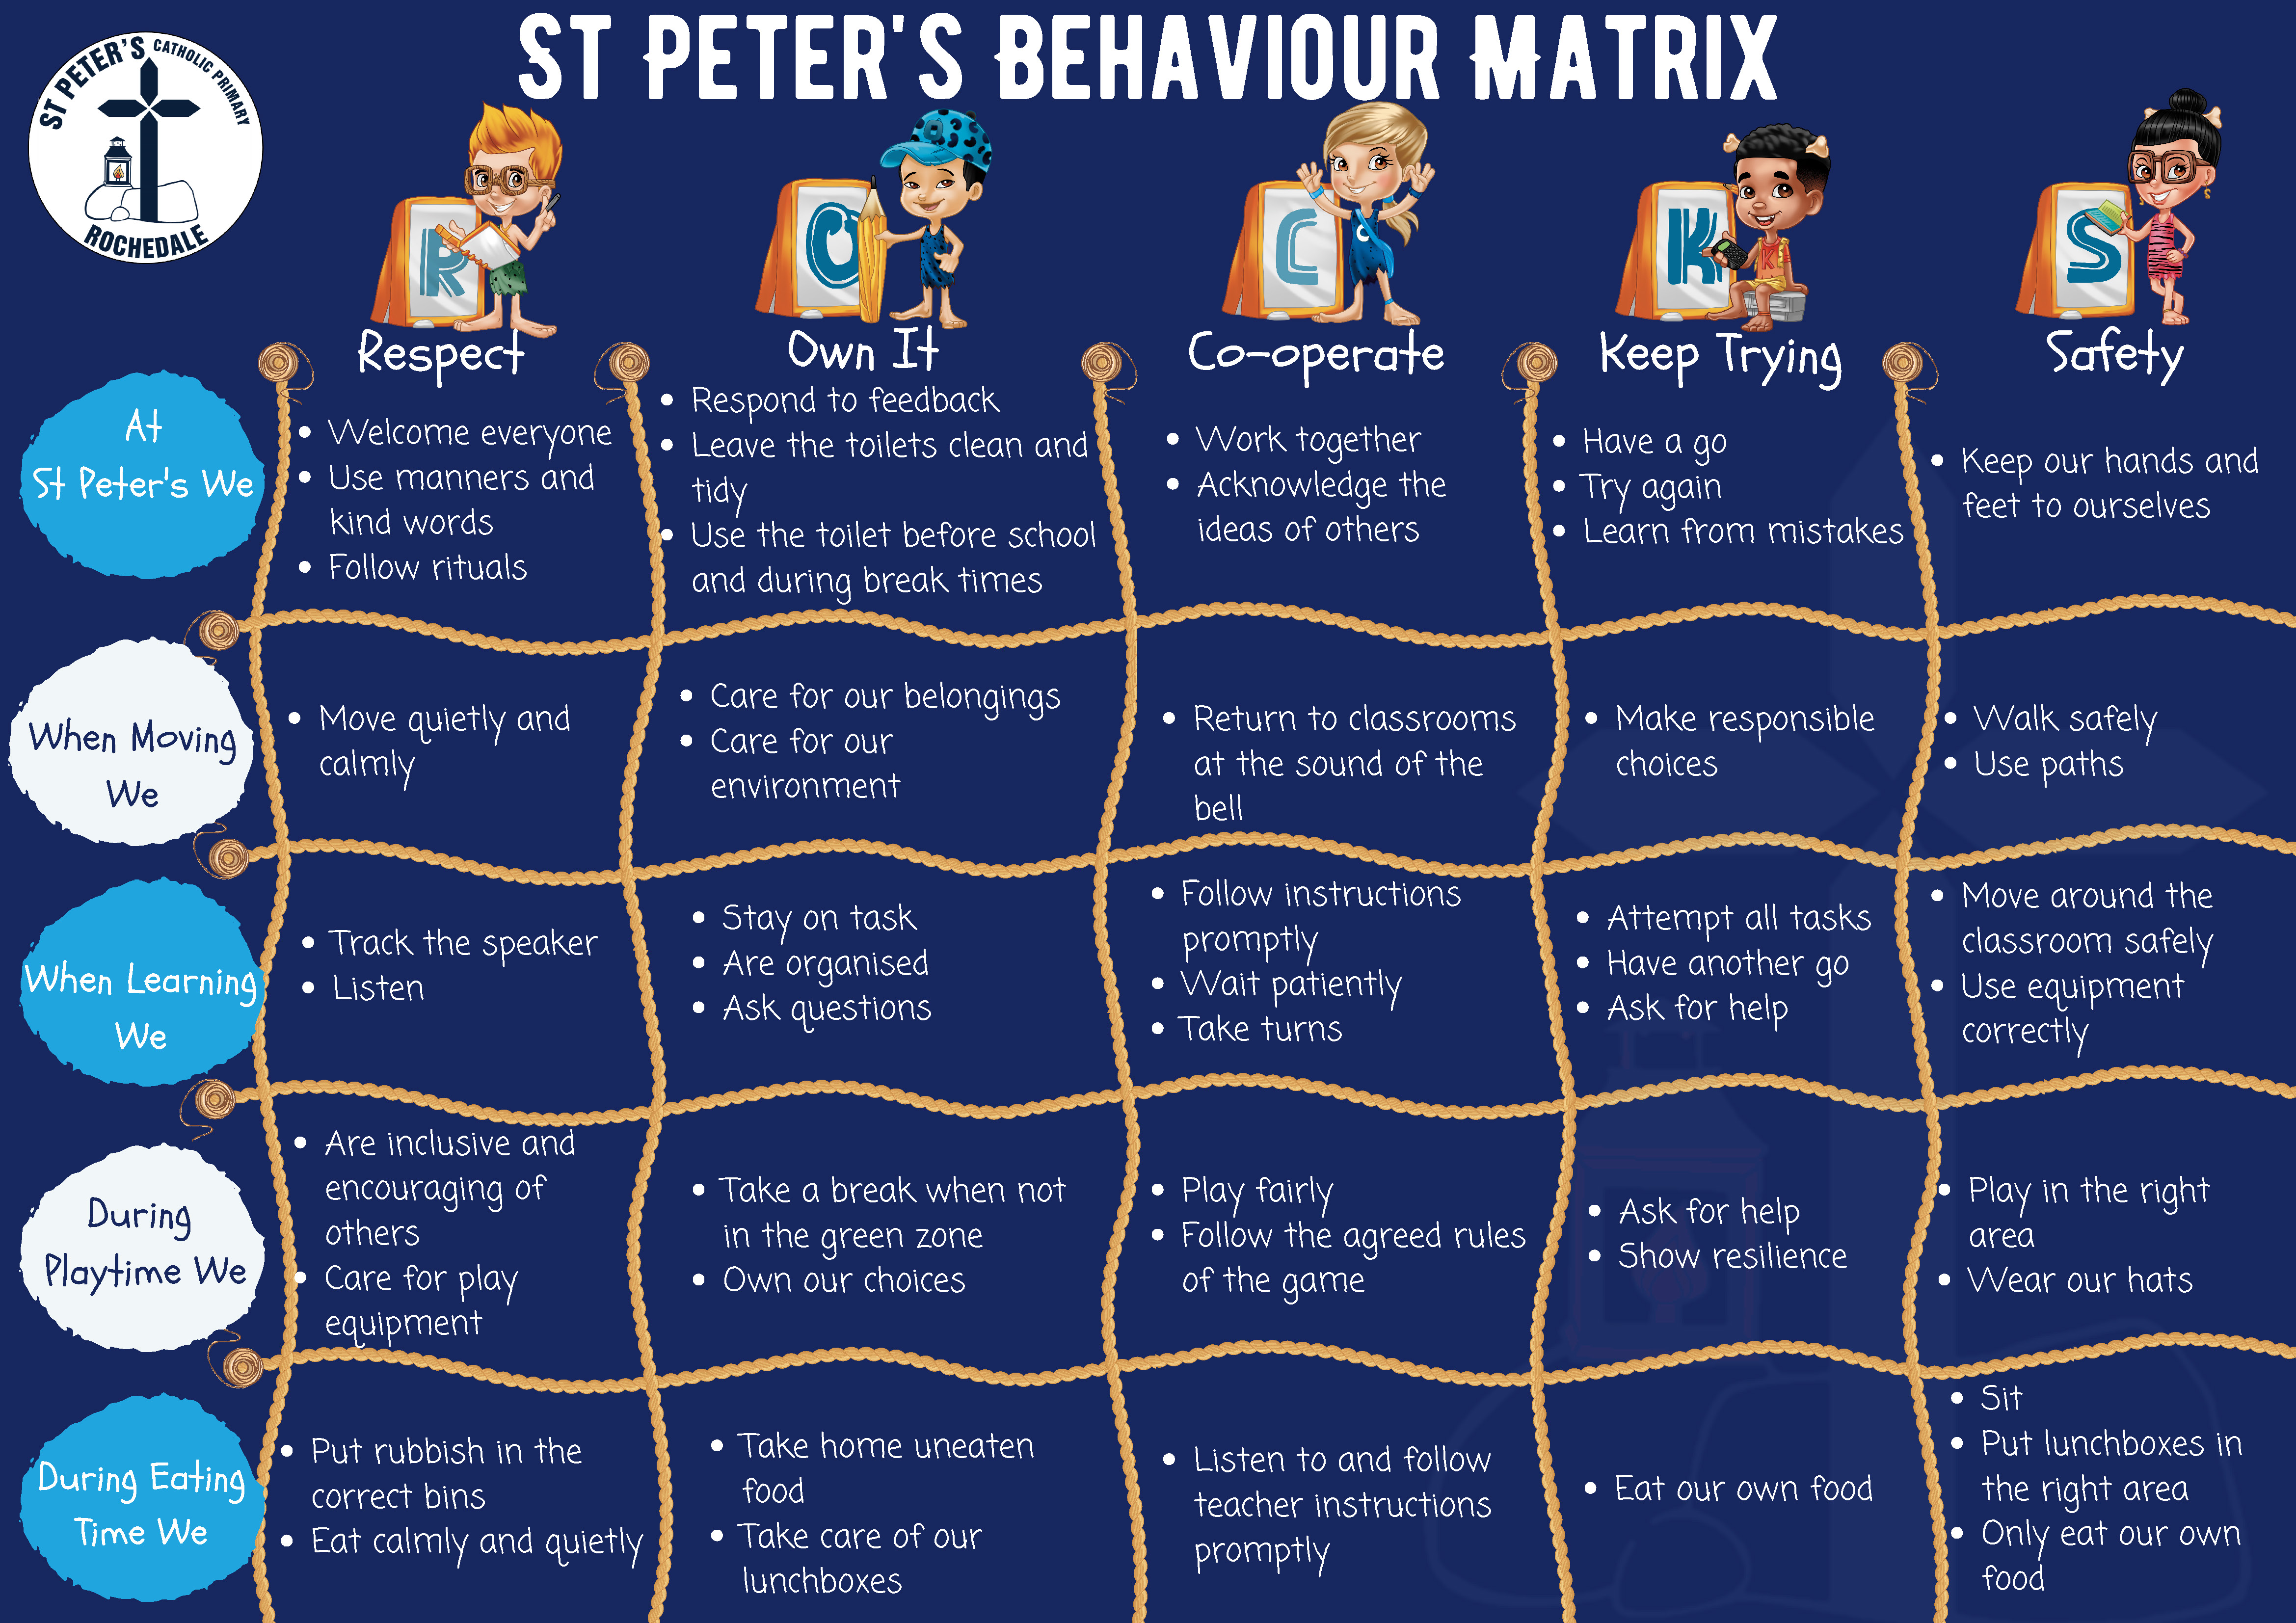 St Peter's Behaviour Matrix.jpg